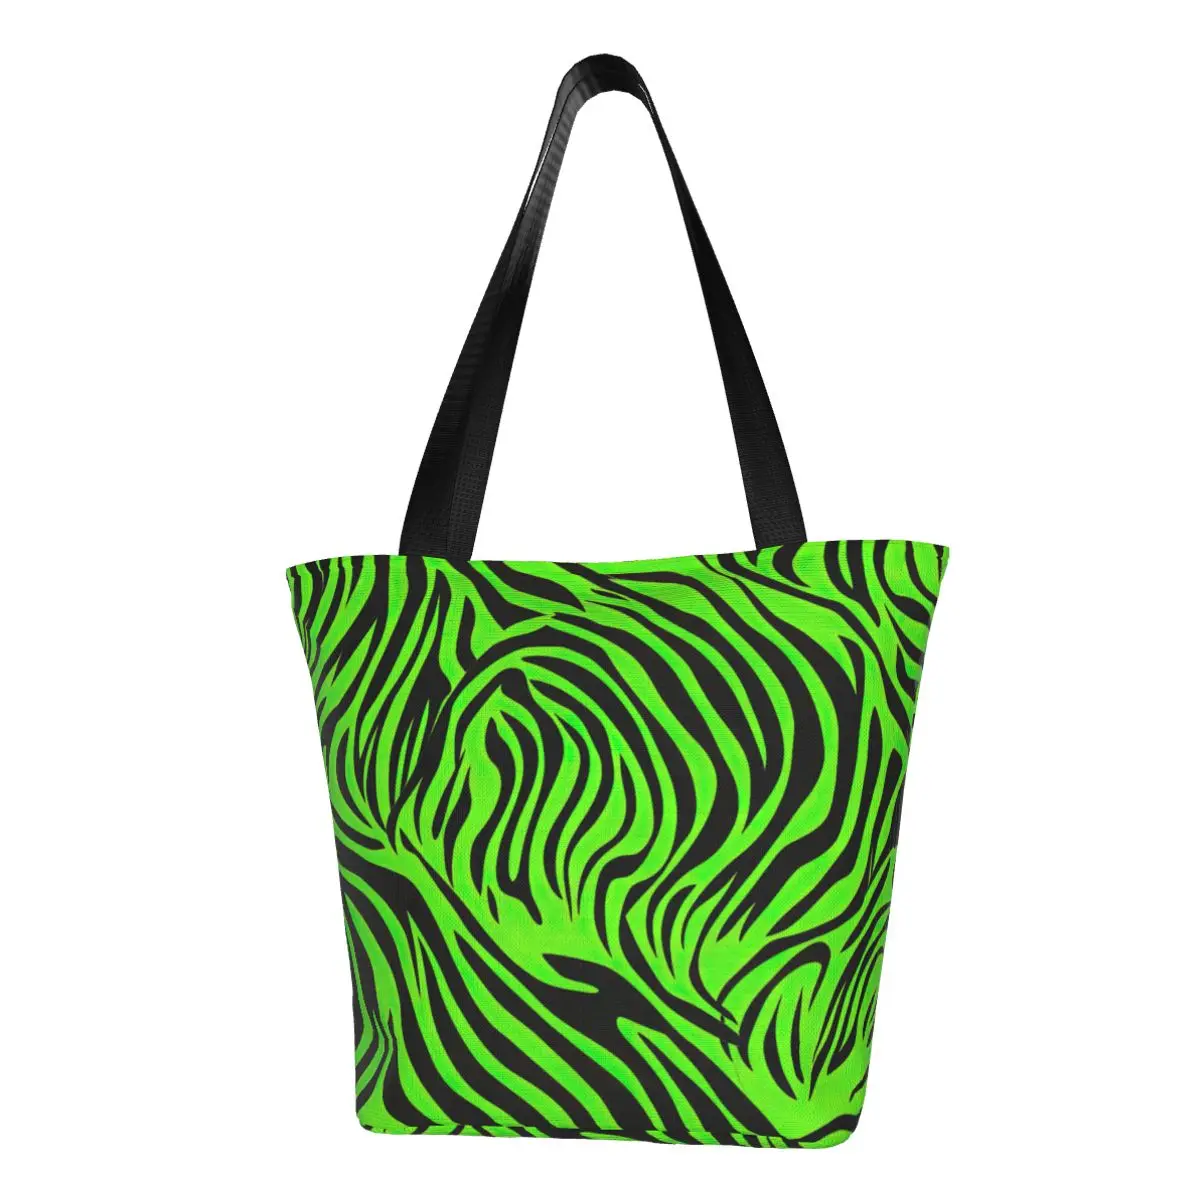 

Зеленая сумка-шоппер в полоску, дорожные сумки с принтом зебры для студентов, тканевый тоут на плечо, Новинка